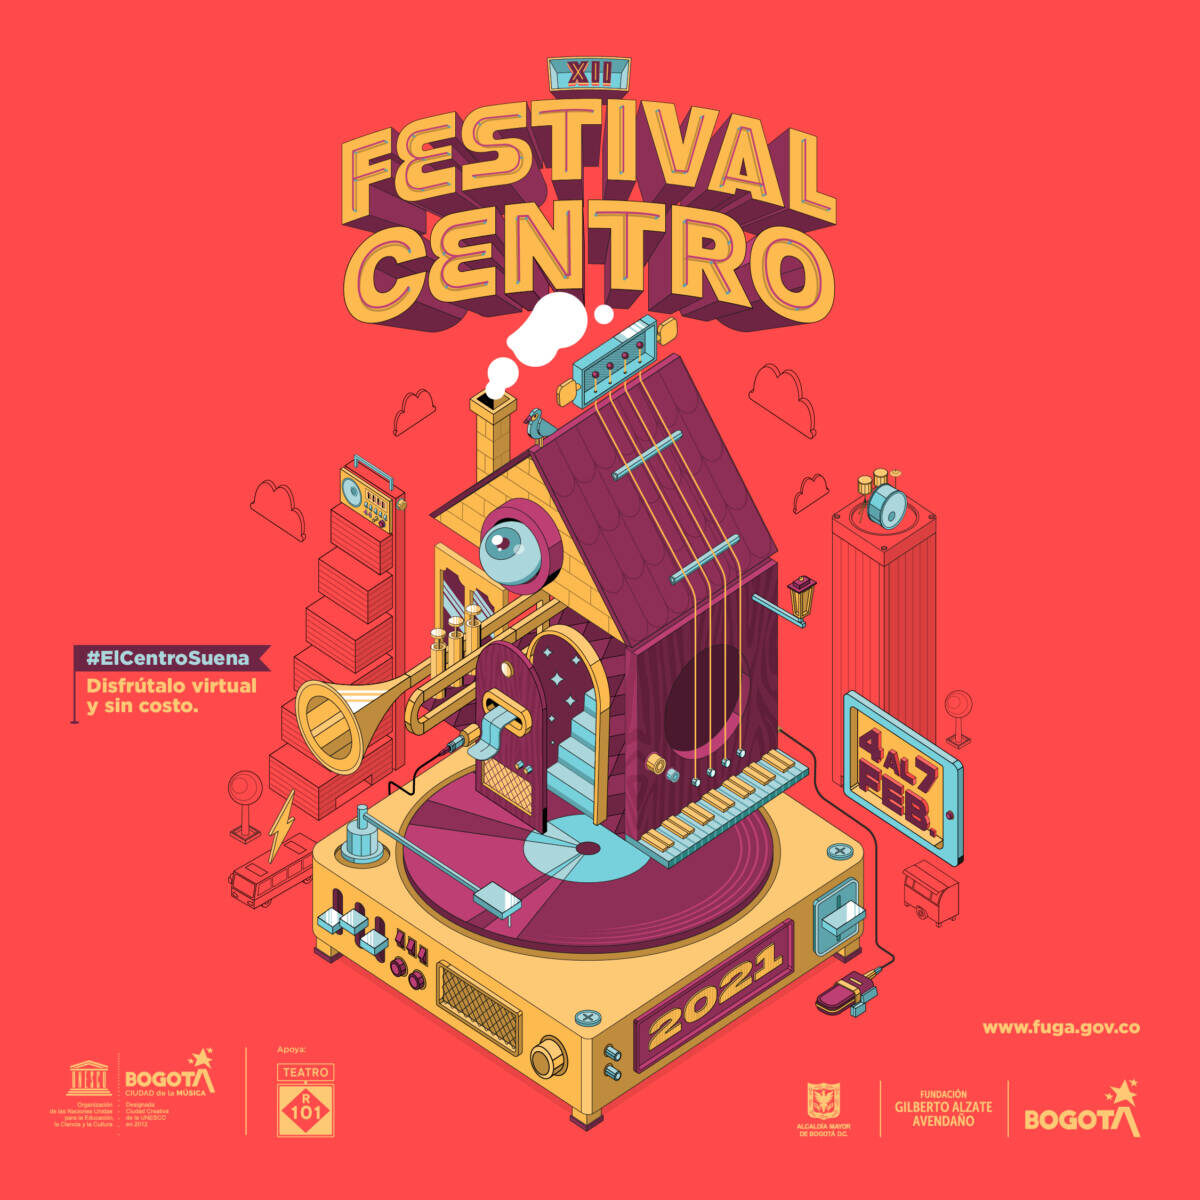 Se abre la convocatoria para el festival Centro 2023 La Fundación Gilberto Alzate Avendaño, La Fuga, abrió la convocatoria para seleccionar los artistas que integrarán el cartel de uno de los festivales musicales más importantes de Bogotá: El Festival Centro 2023.